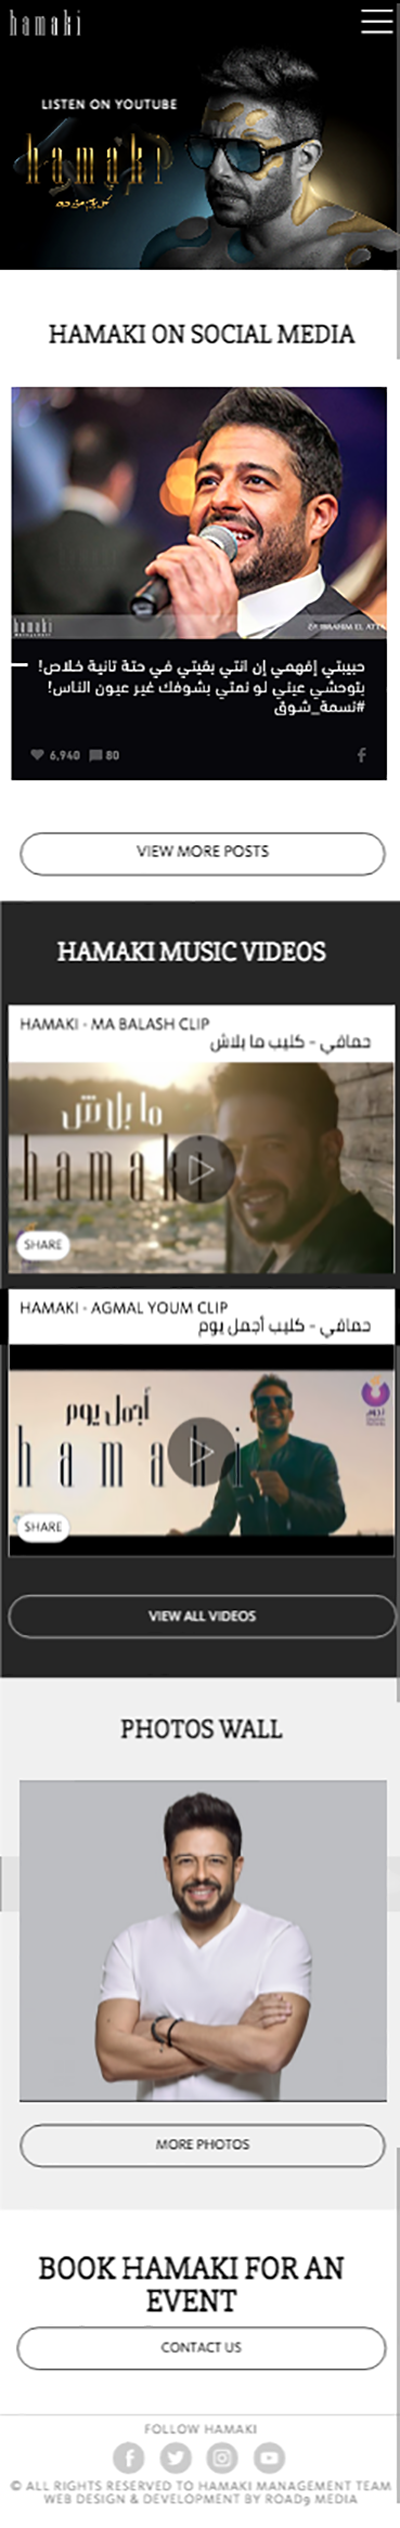 Mohamed Hamaki Website